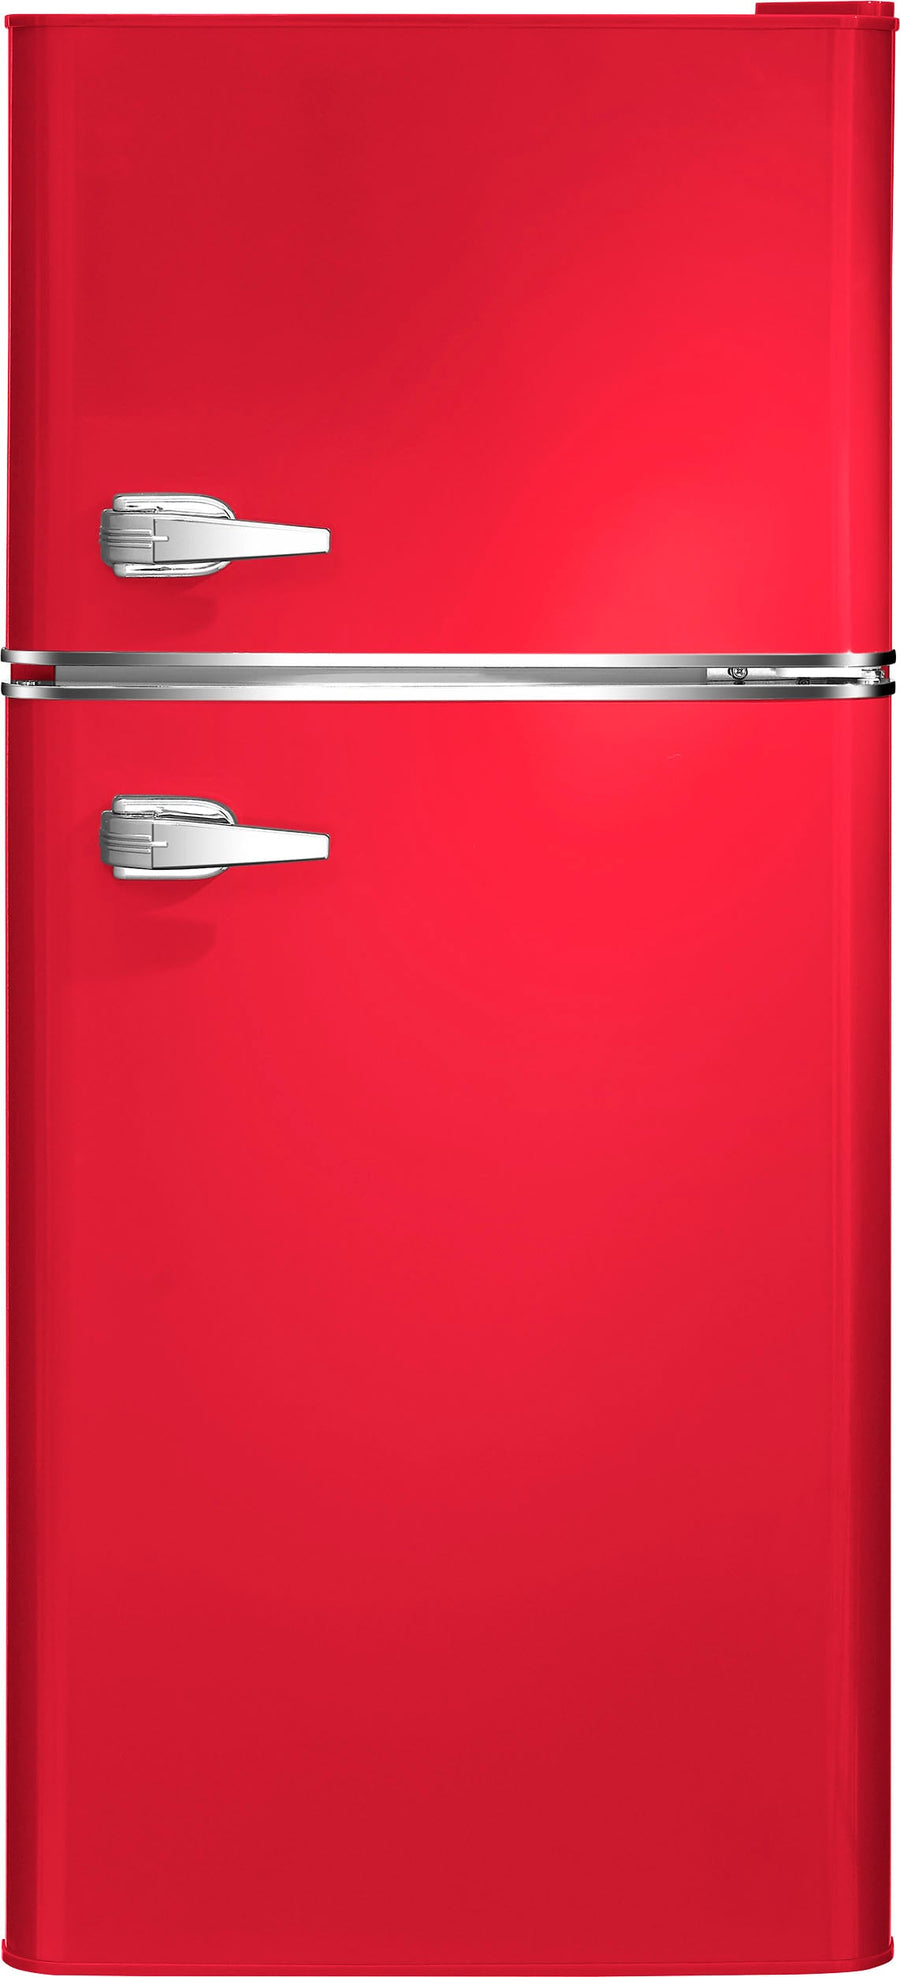 Insignia™ - 4.5 Cu. Ft. Retro Mini Fridge with Top Freezer - Red_0